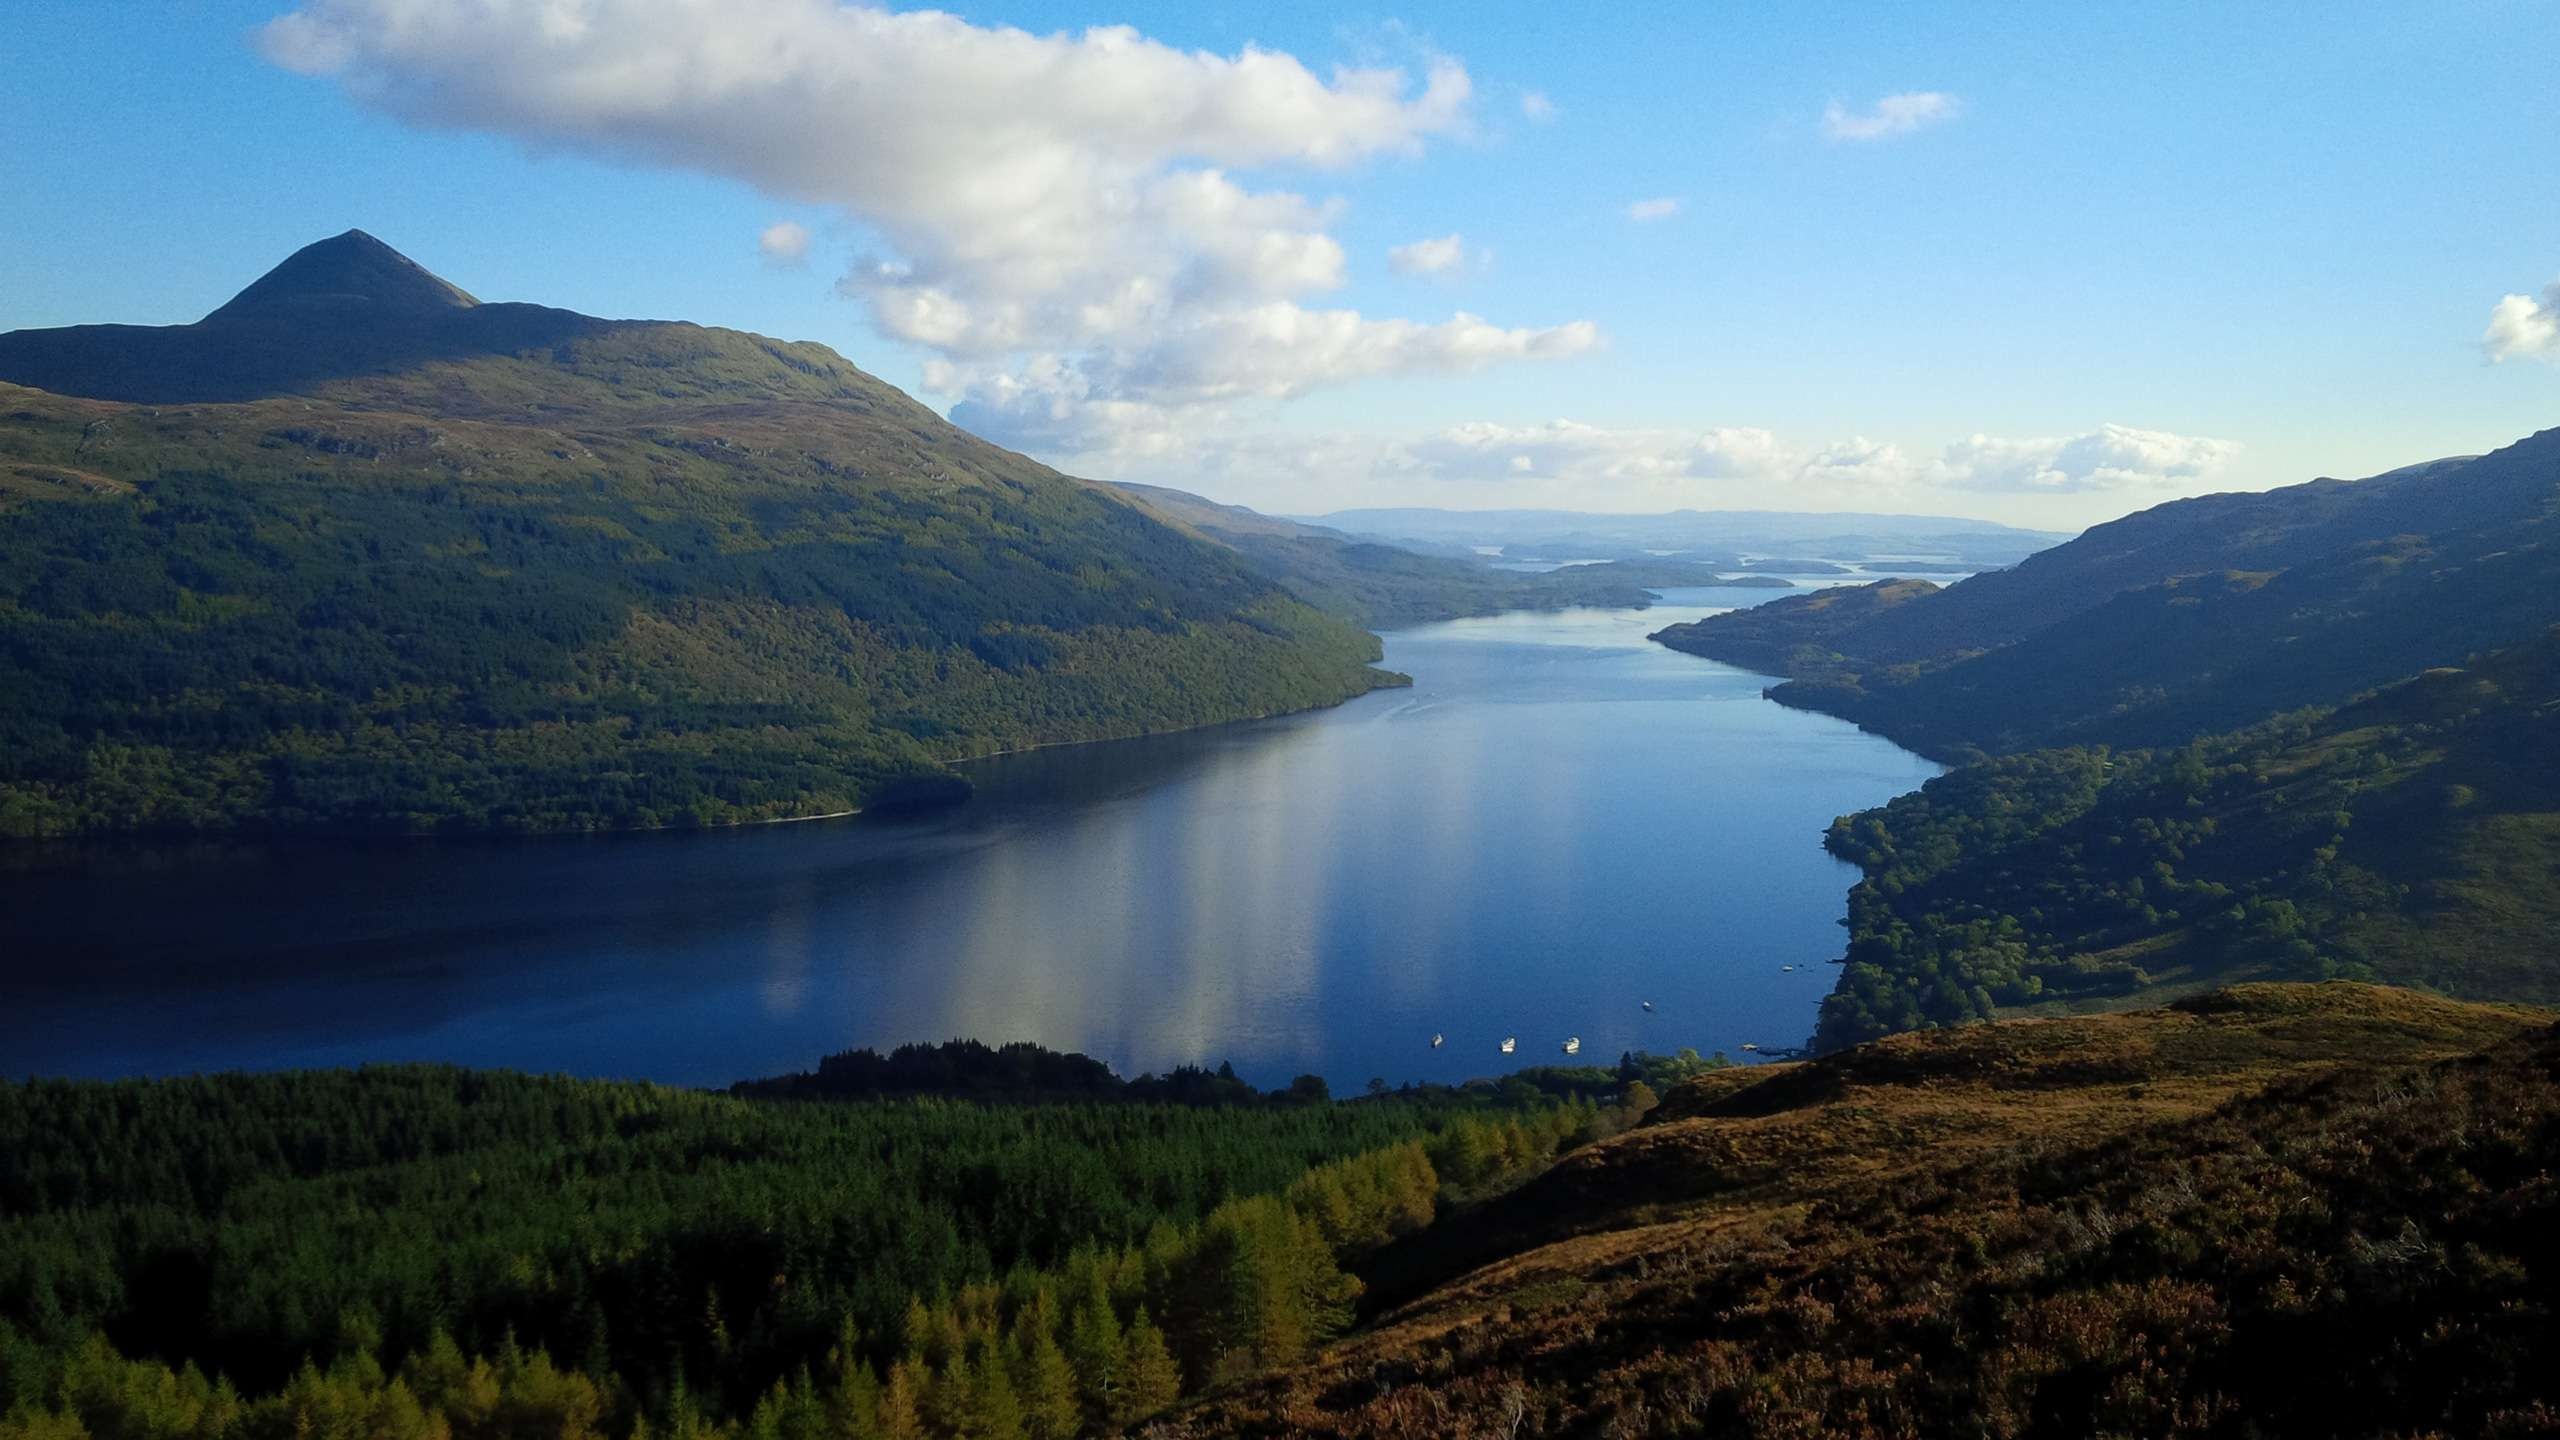 Loch Lomond, Cruise Loch Lomond, Bonnie Scotland, Water adventure, 2560x1440 HD Desktop